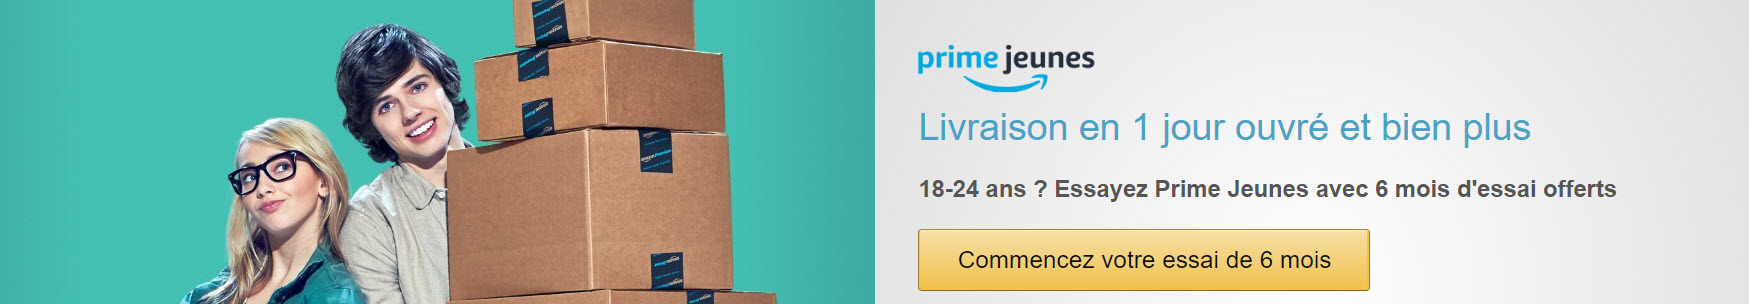 Amazon Prime Jeunes